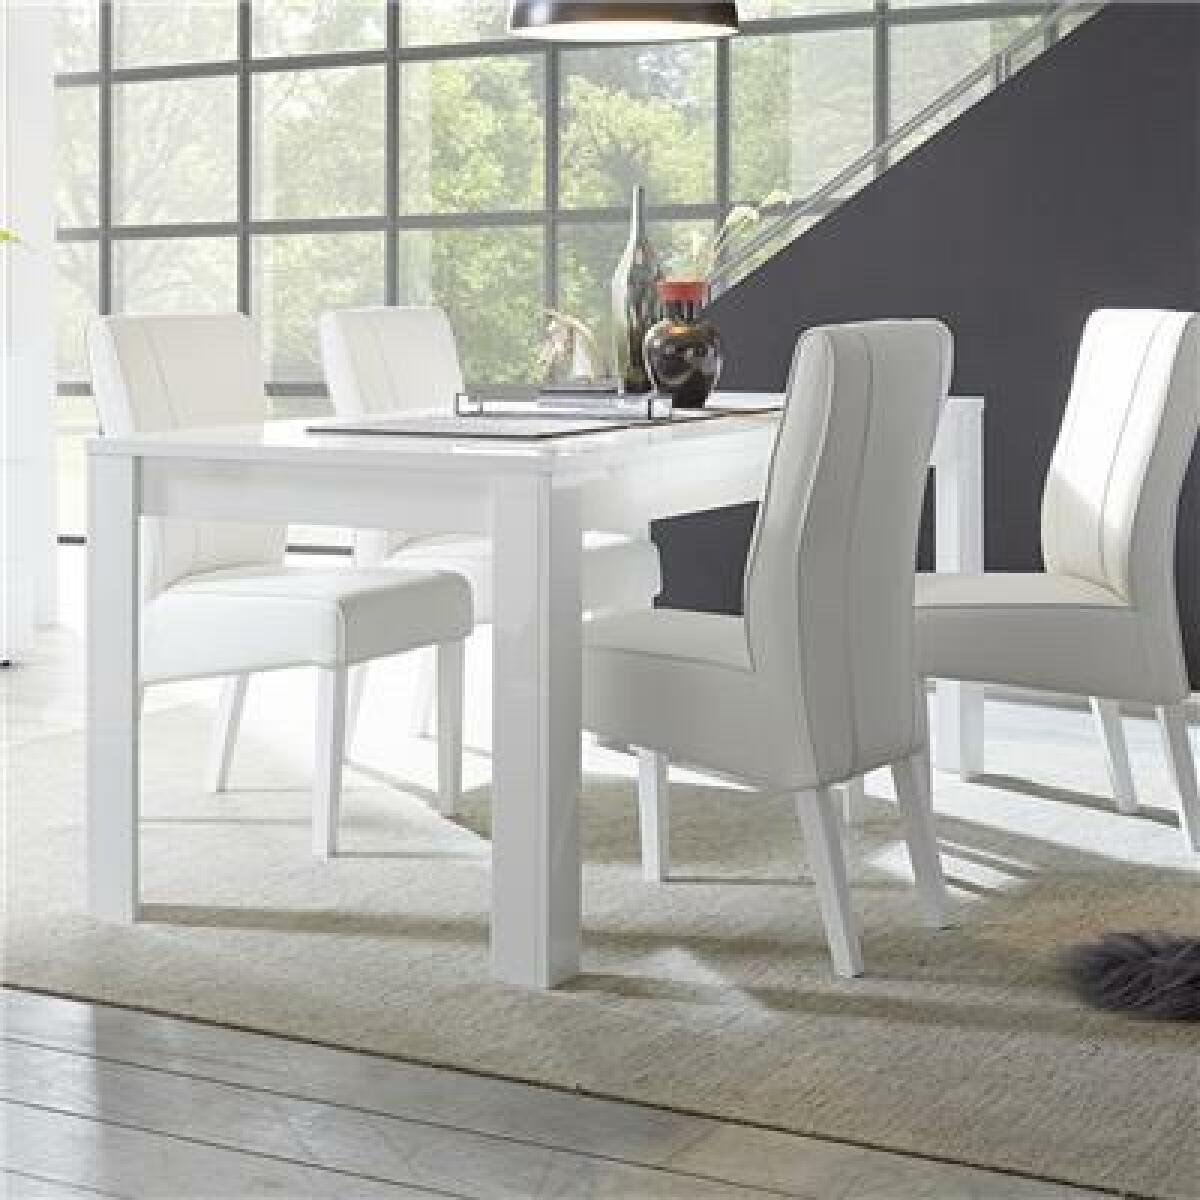 Tables à manger Kasalinea Table à manger blanc laqué brillant design DOMINOS-L 185 x P 90 x H 79 cm- Blanc